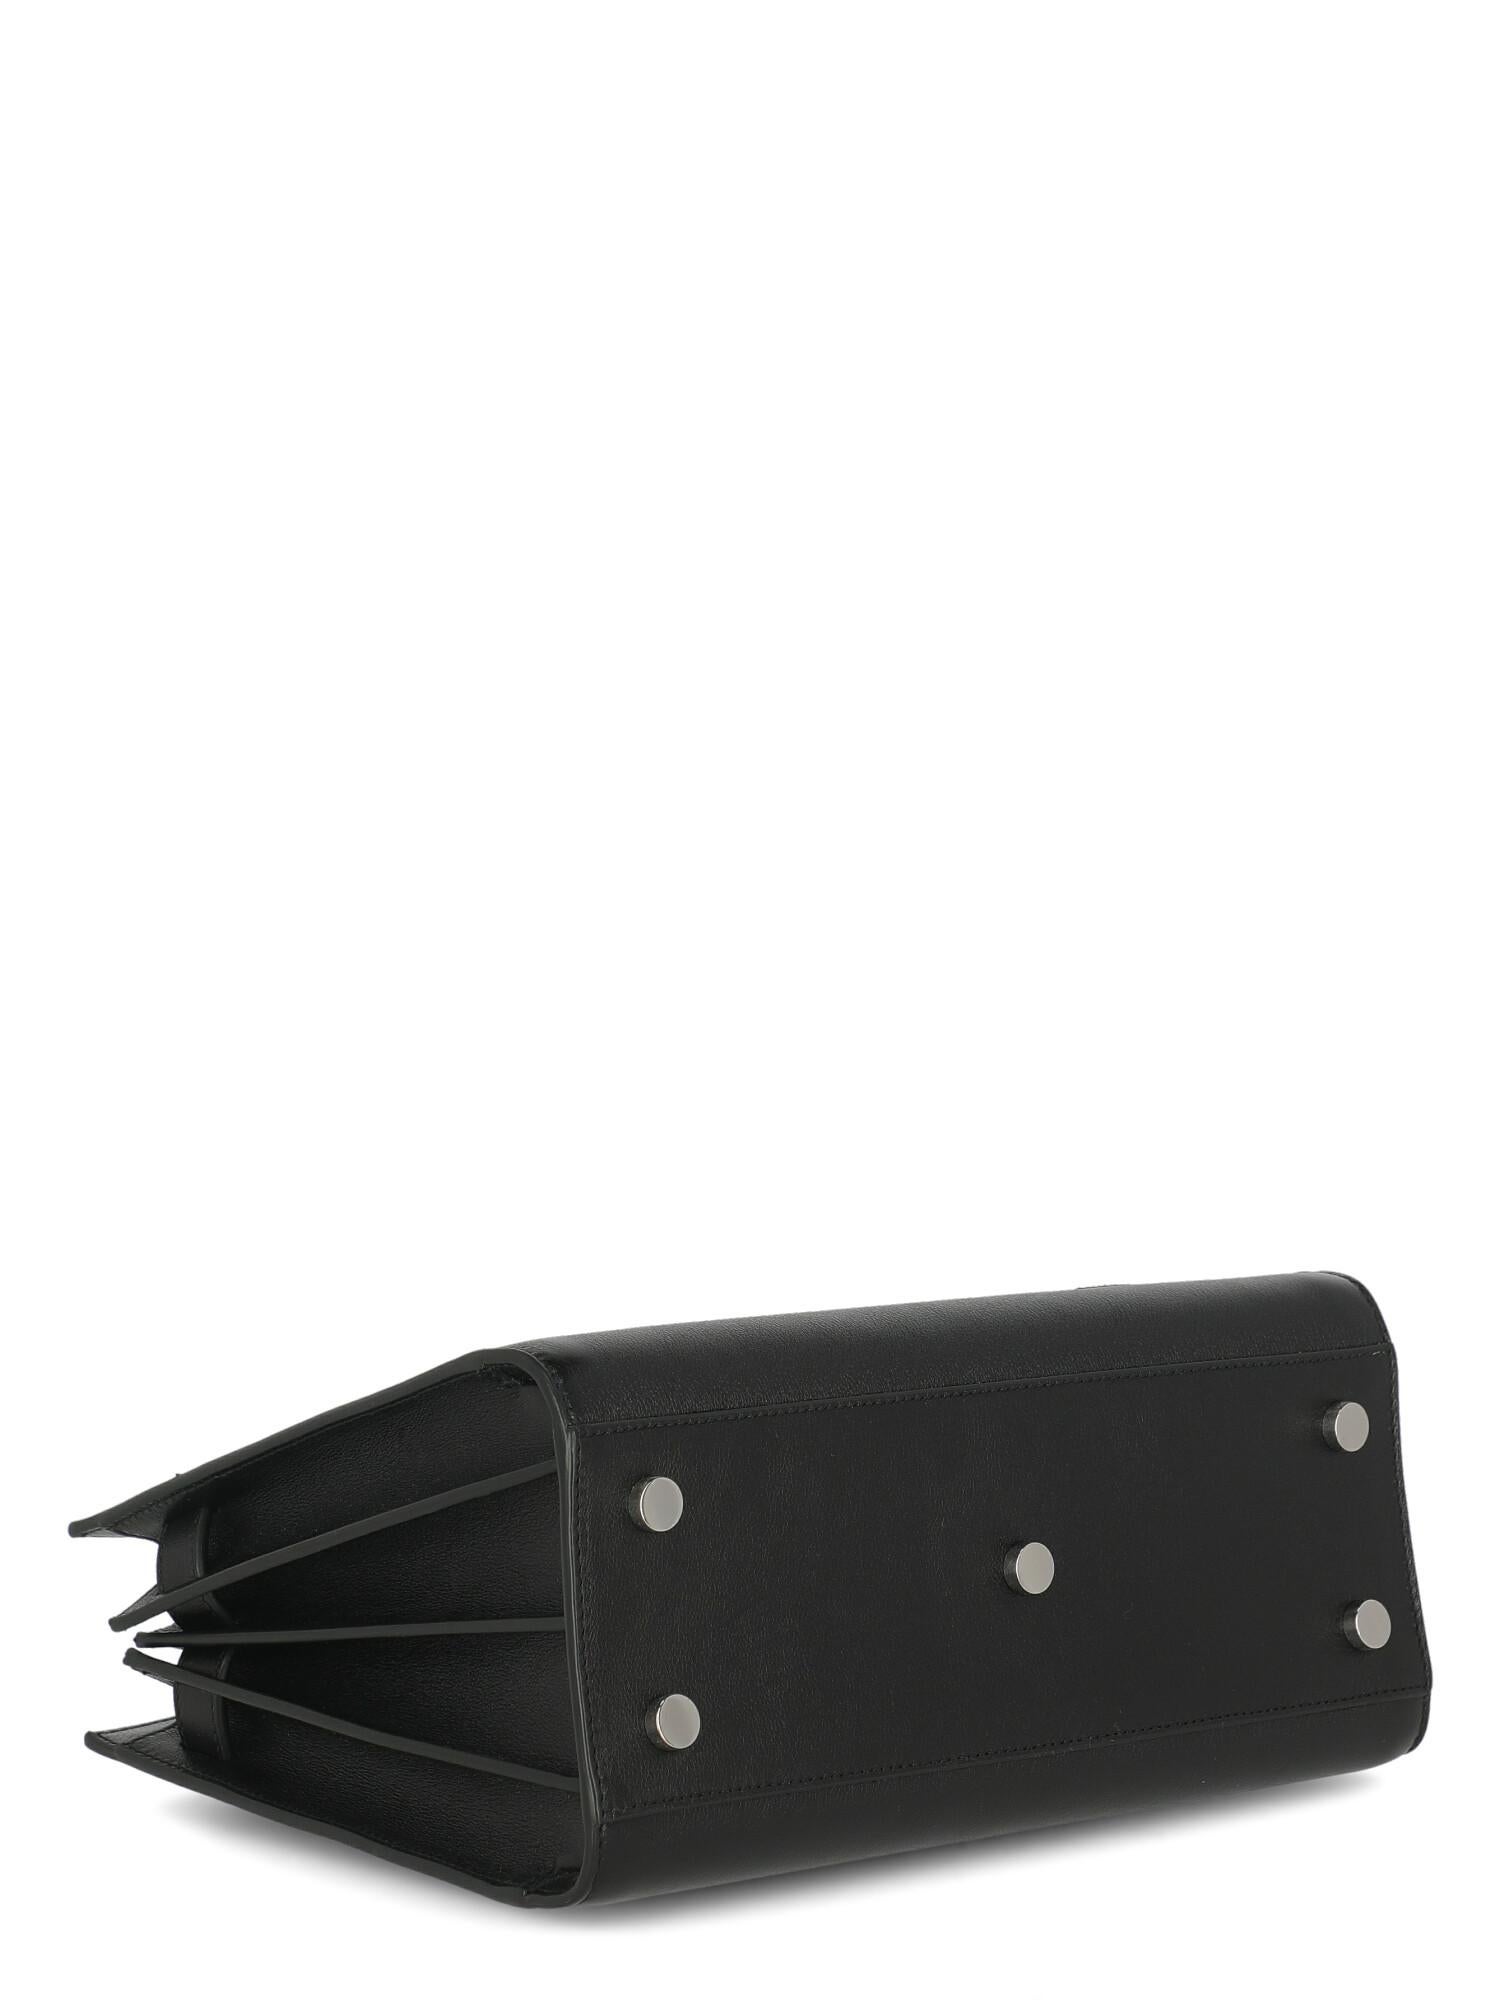 Saint Laurent Women  Handbags  Sac De Jour Black Leather For Sale 1